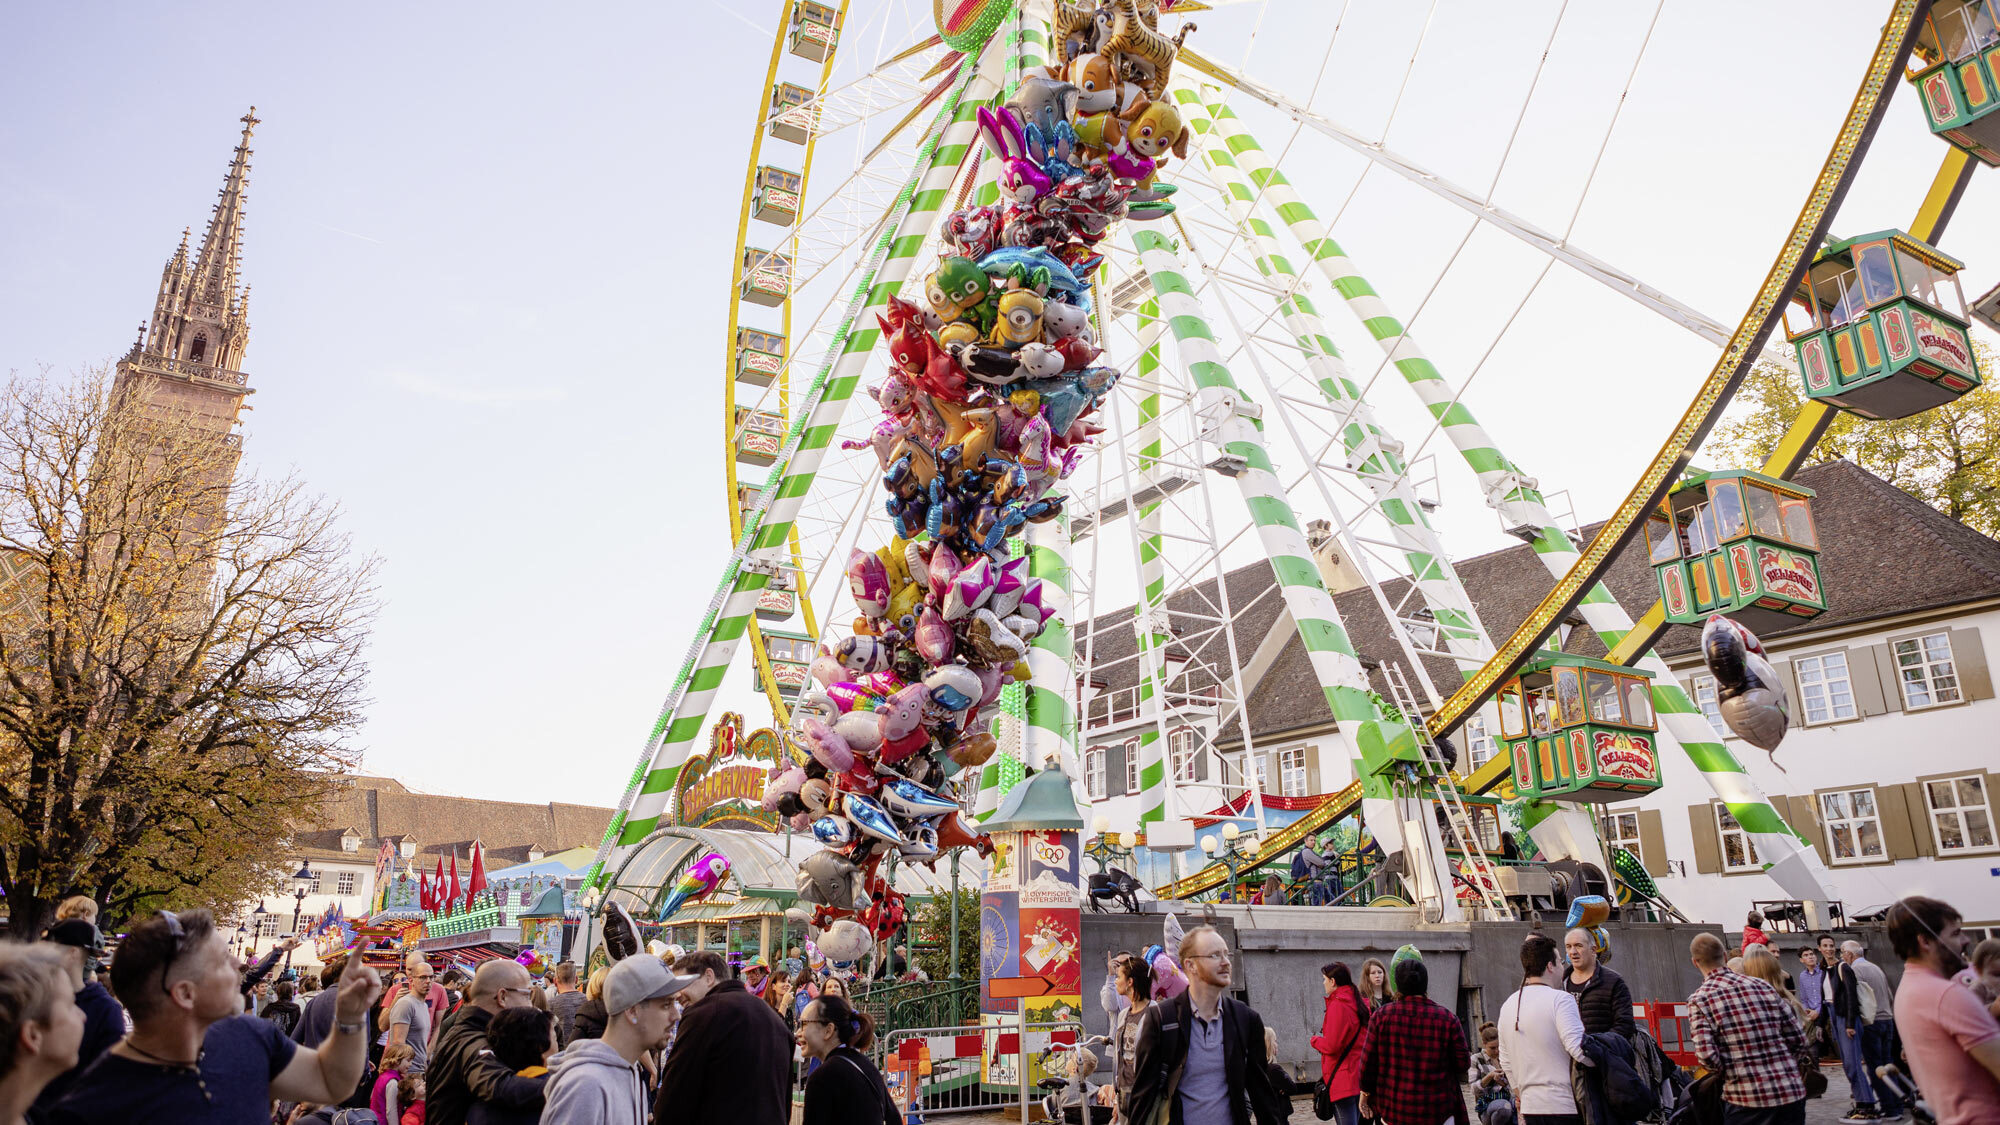 Münsterplatz heute: Wow, so viele farbige Ballone. Und warst du eigentlich schon mal auf dem Riesenrad?